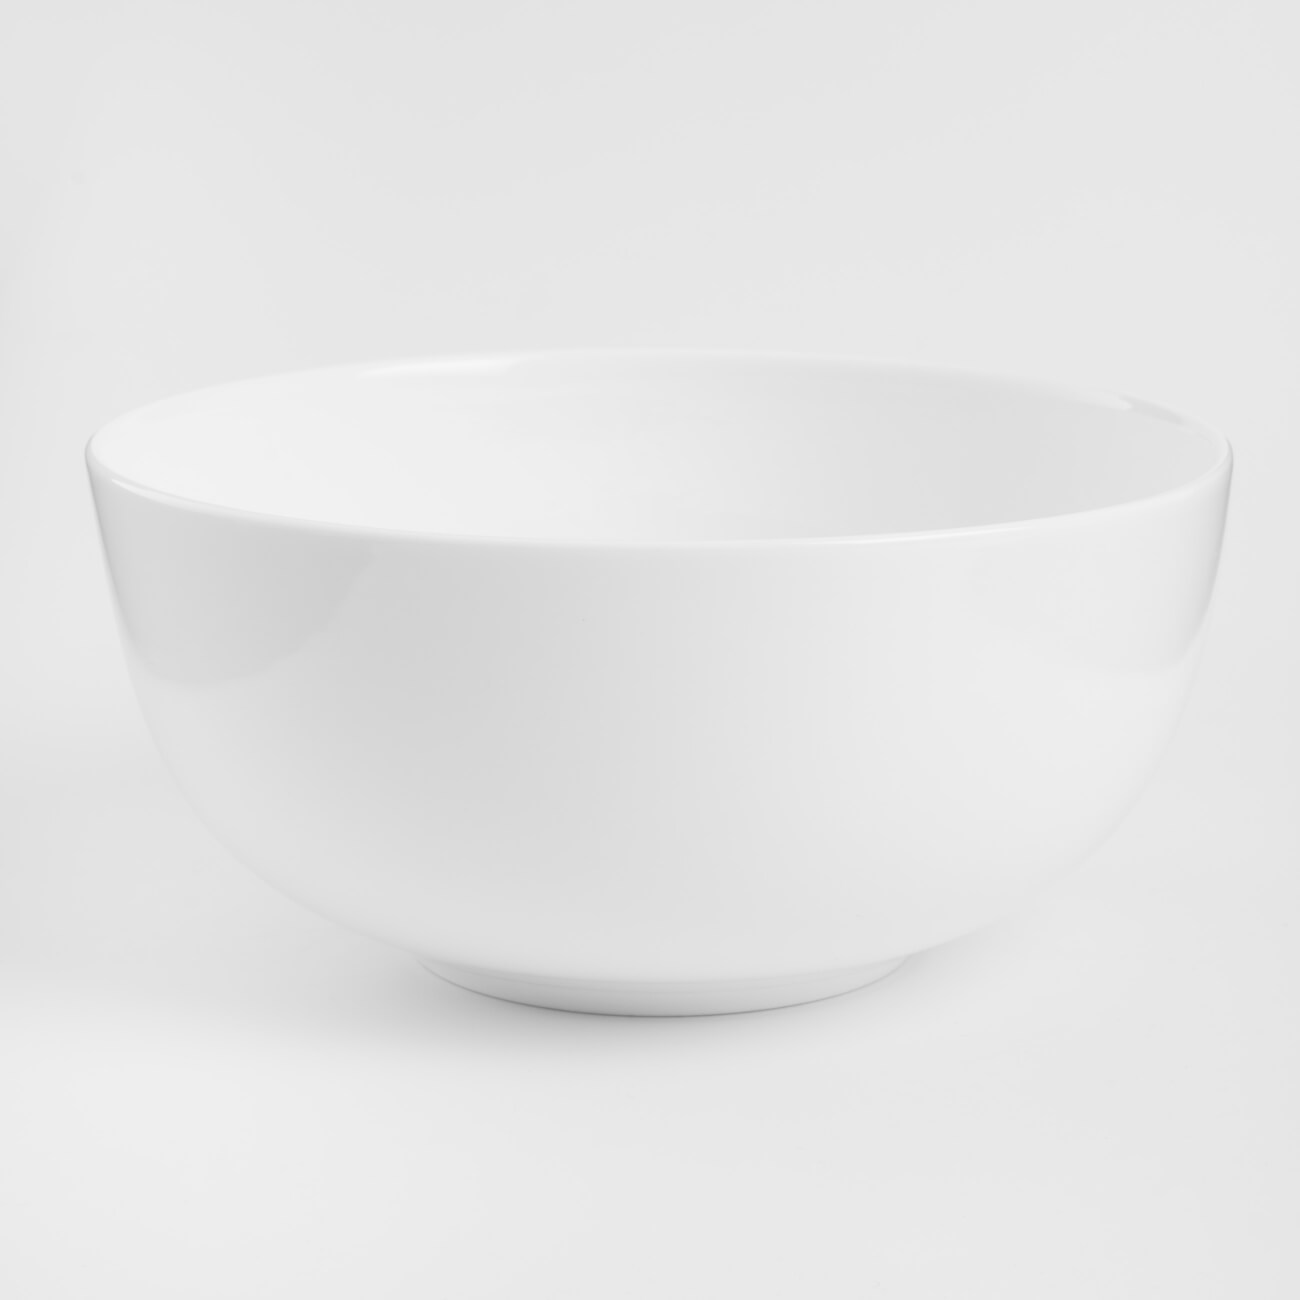 Салатник, 18х9 см, 1,2 л, фарфор F, белый, Ideal white салатник пластик круглый 1 7 л neo luxe sugar